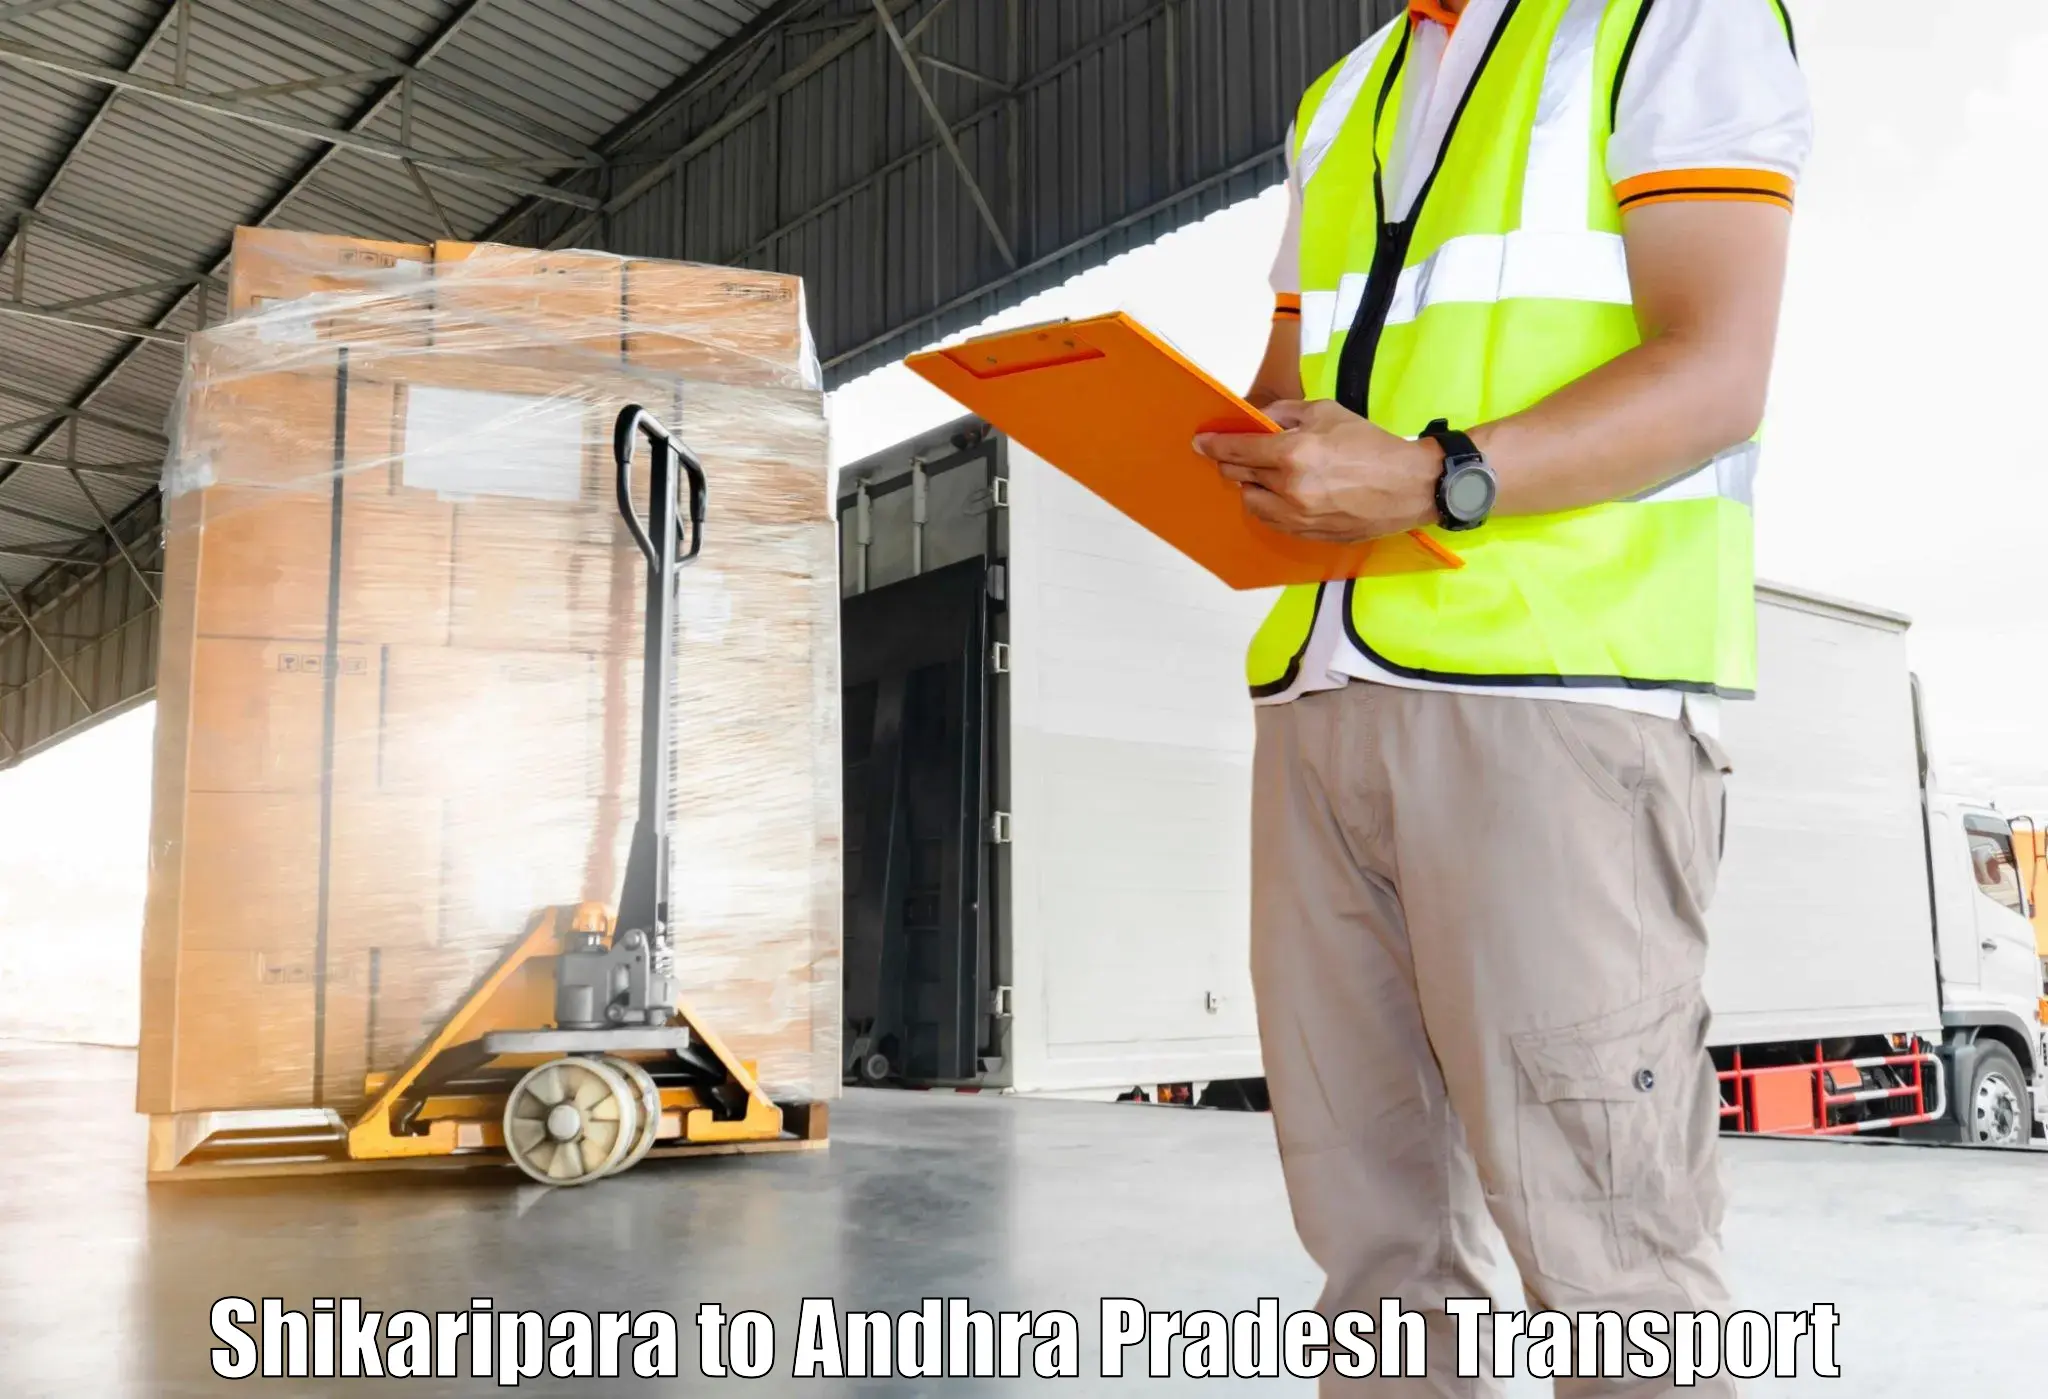 Cargo transport services Shikaripara to B Kothakota